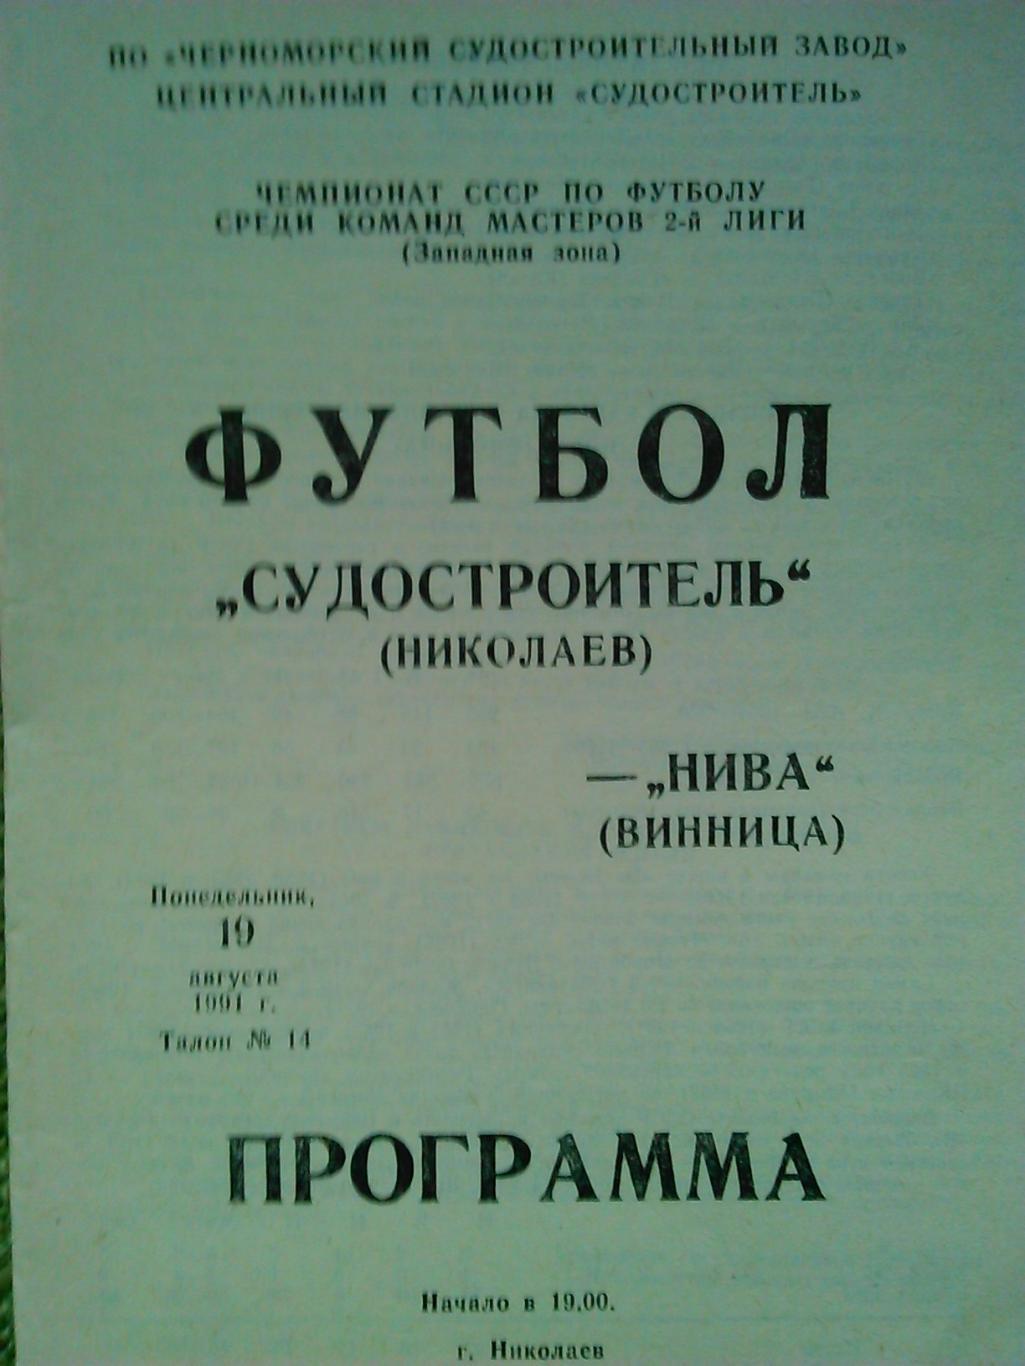 Судостроитель Николаев-НИВА Винница 19.08.1991. Оптом скидки до 50%!